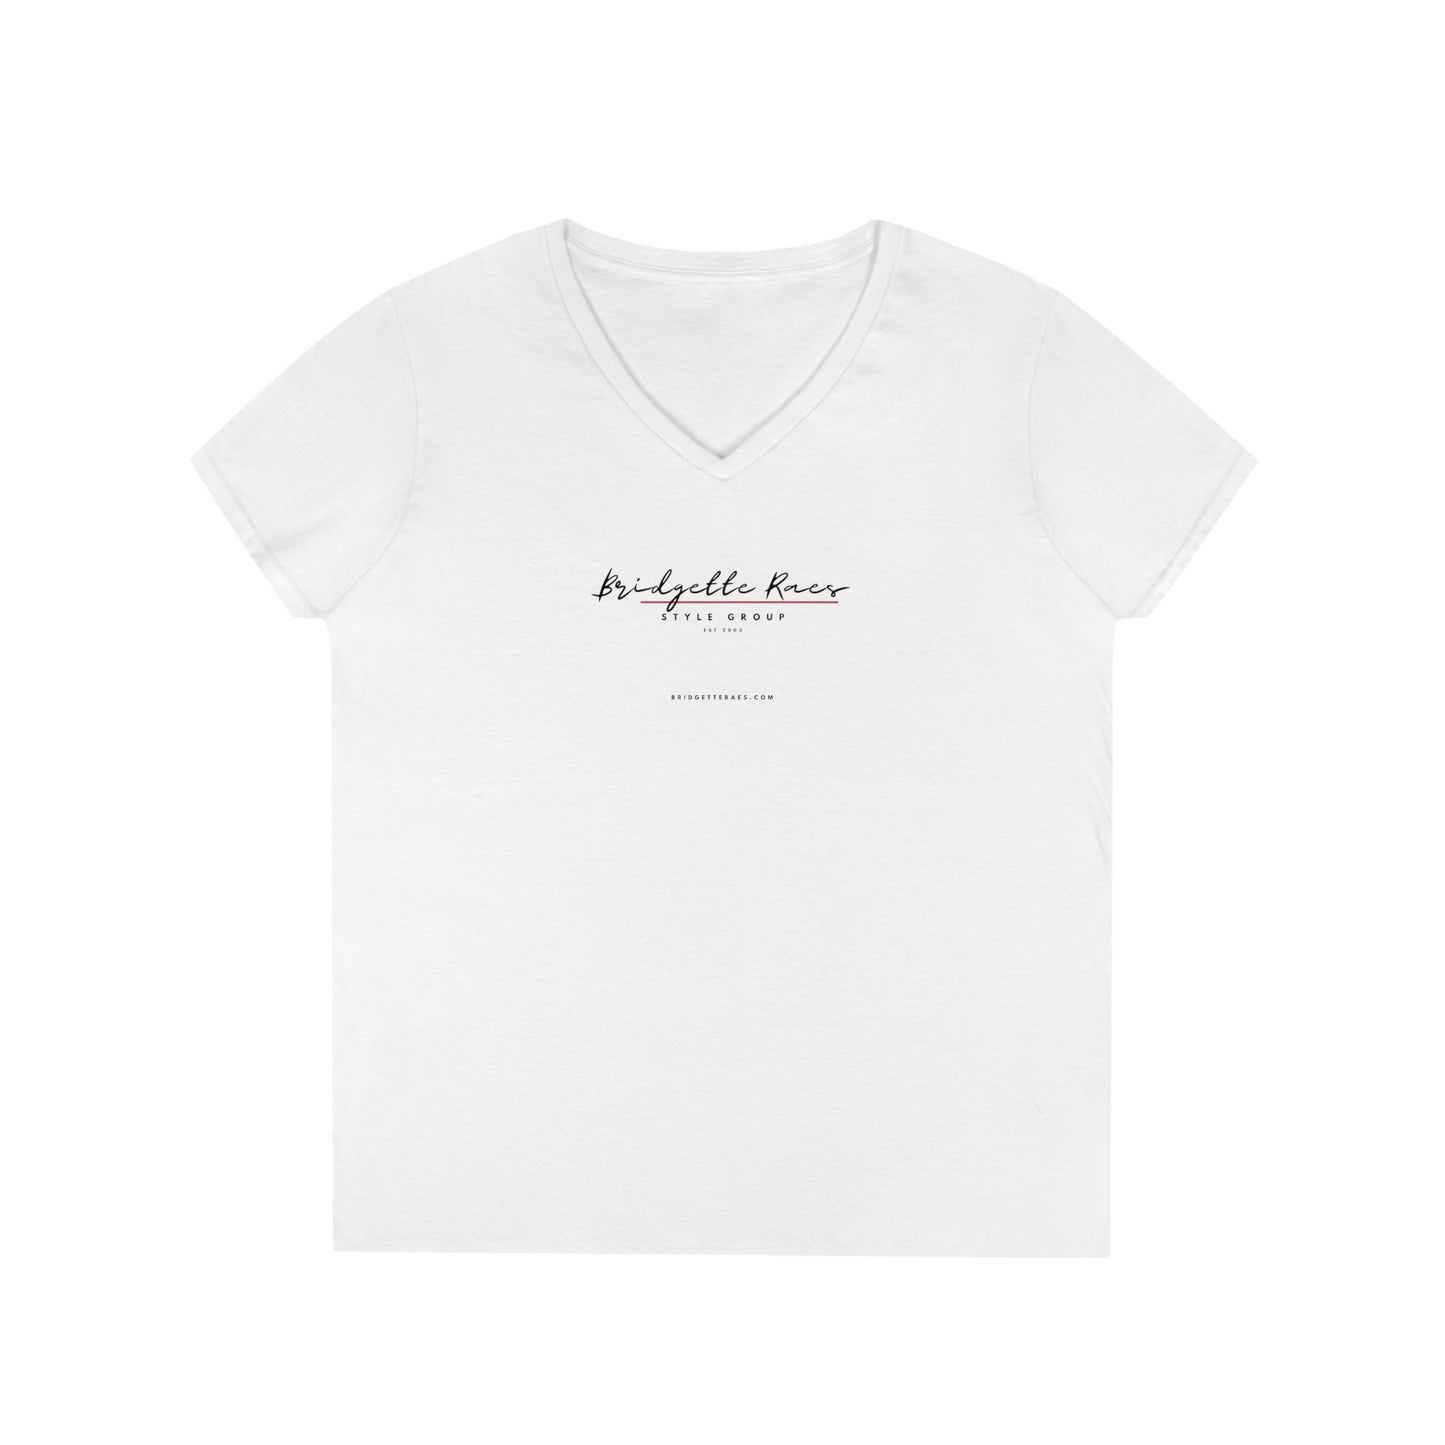 Bridgette Raes Style Group 100% Cotton V-Neck T-Shirt